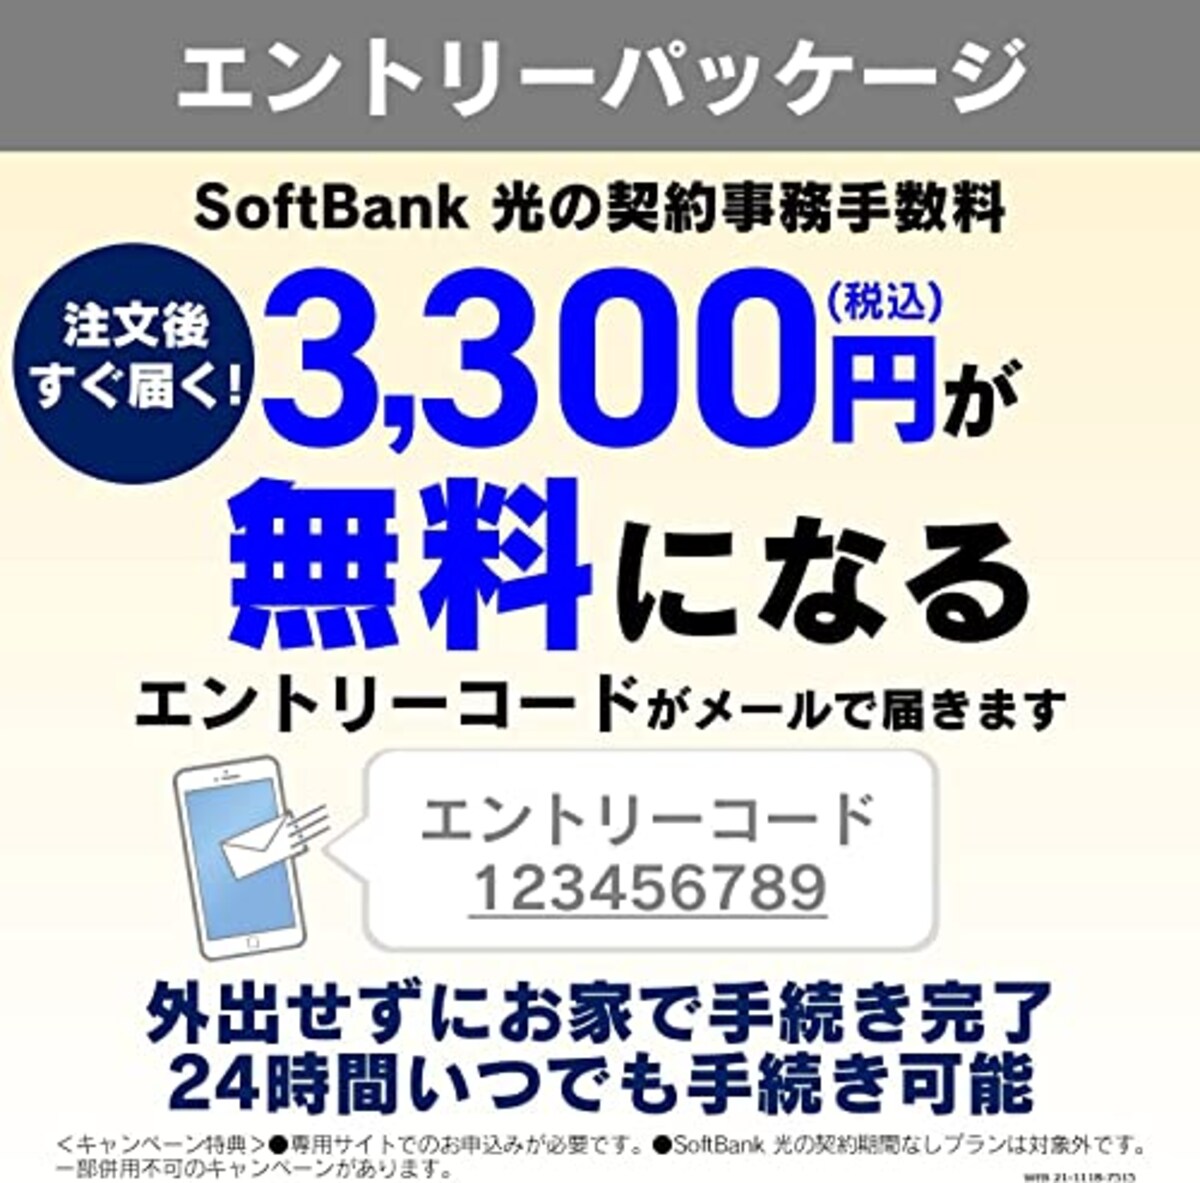  SoftBank 光 お申し込みエントリーパッケージ + ASUS ゲーミングモニター 4Kモニター TUF Gaming VG289Q1A 28インチ/IPS/PS4 Switch 対応/HDMI,DP/HDR10/DCI-P3 90%/FreeSync/フリッカーフリー/国内正規品画像3 